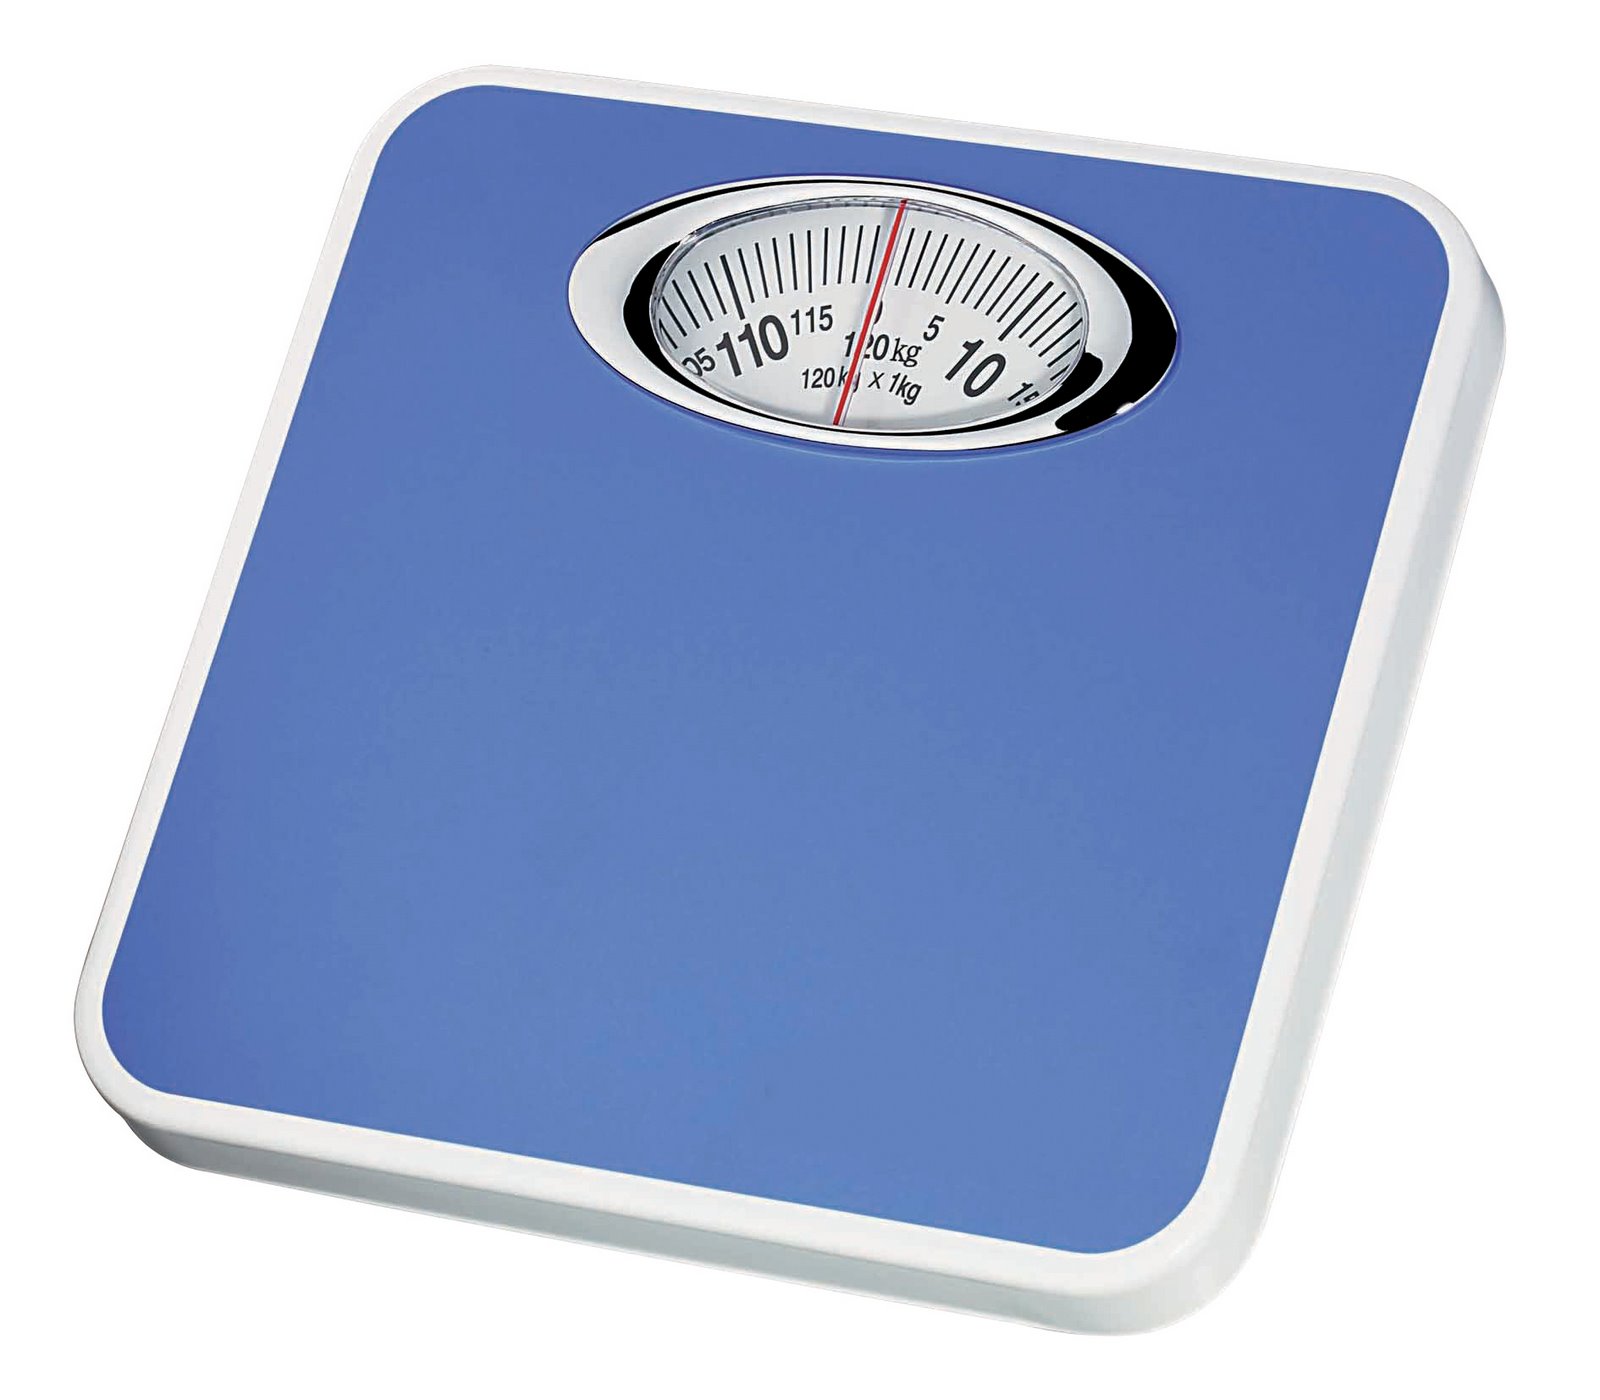 Weighing machine photo